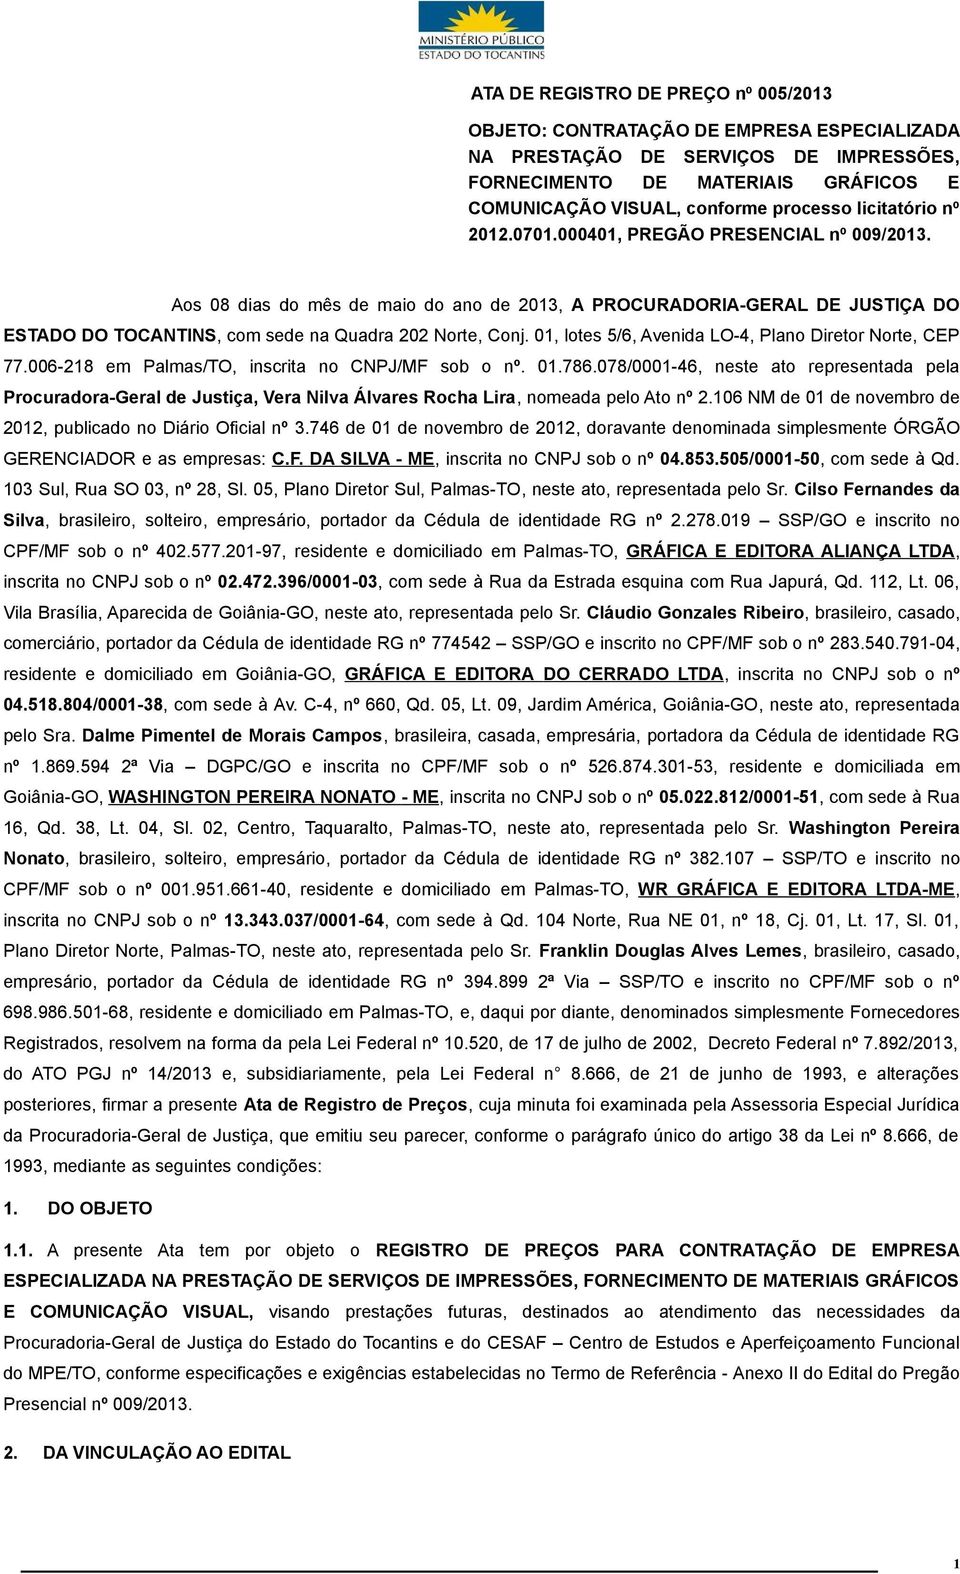 0, lotes 5/6, Avenida LO-4, Plano Diretor Norte, CEP 77.006-8 em Palmas/TO, inscrita no CNPJ/MF sob o nº. 0.786.